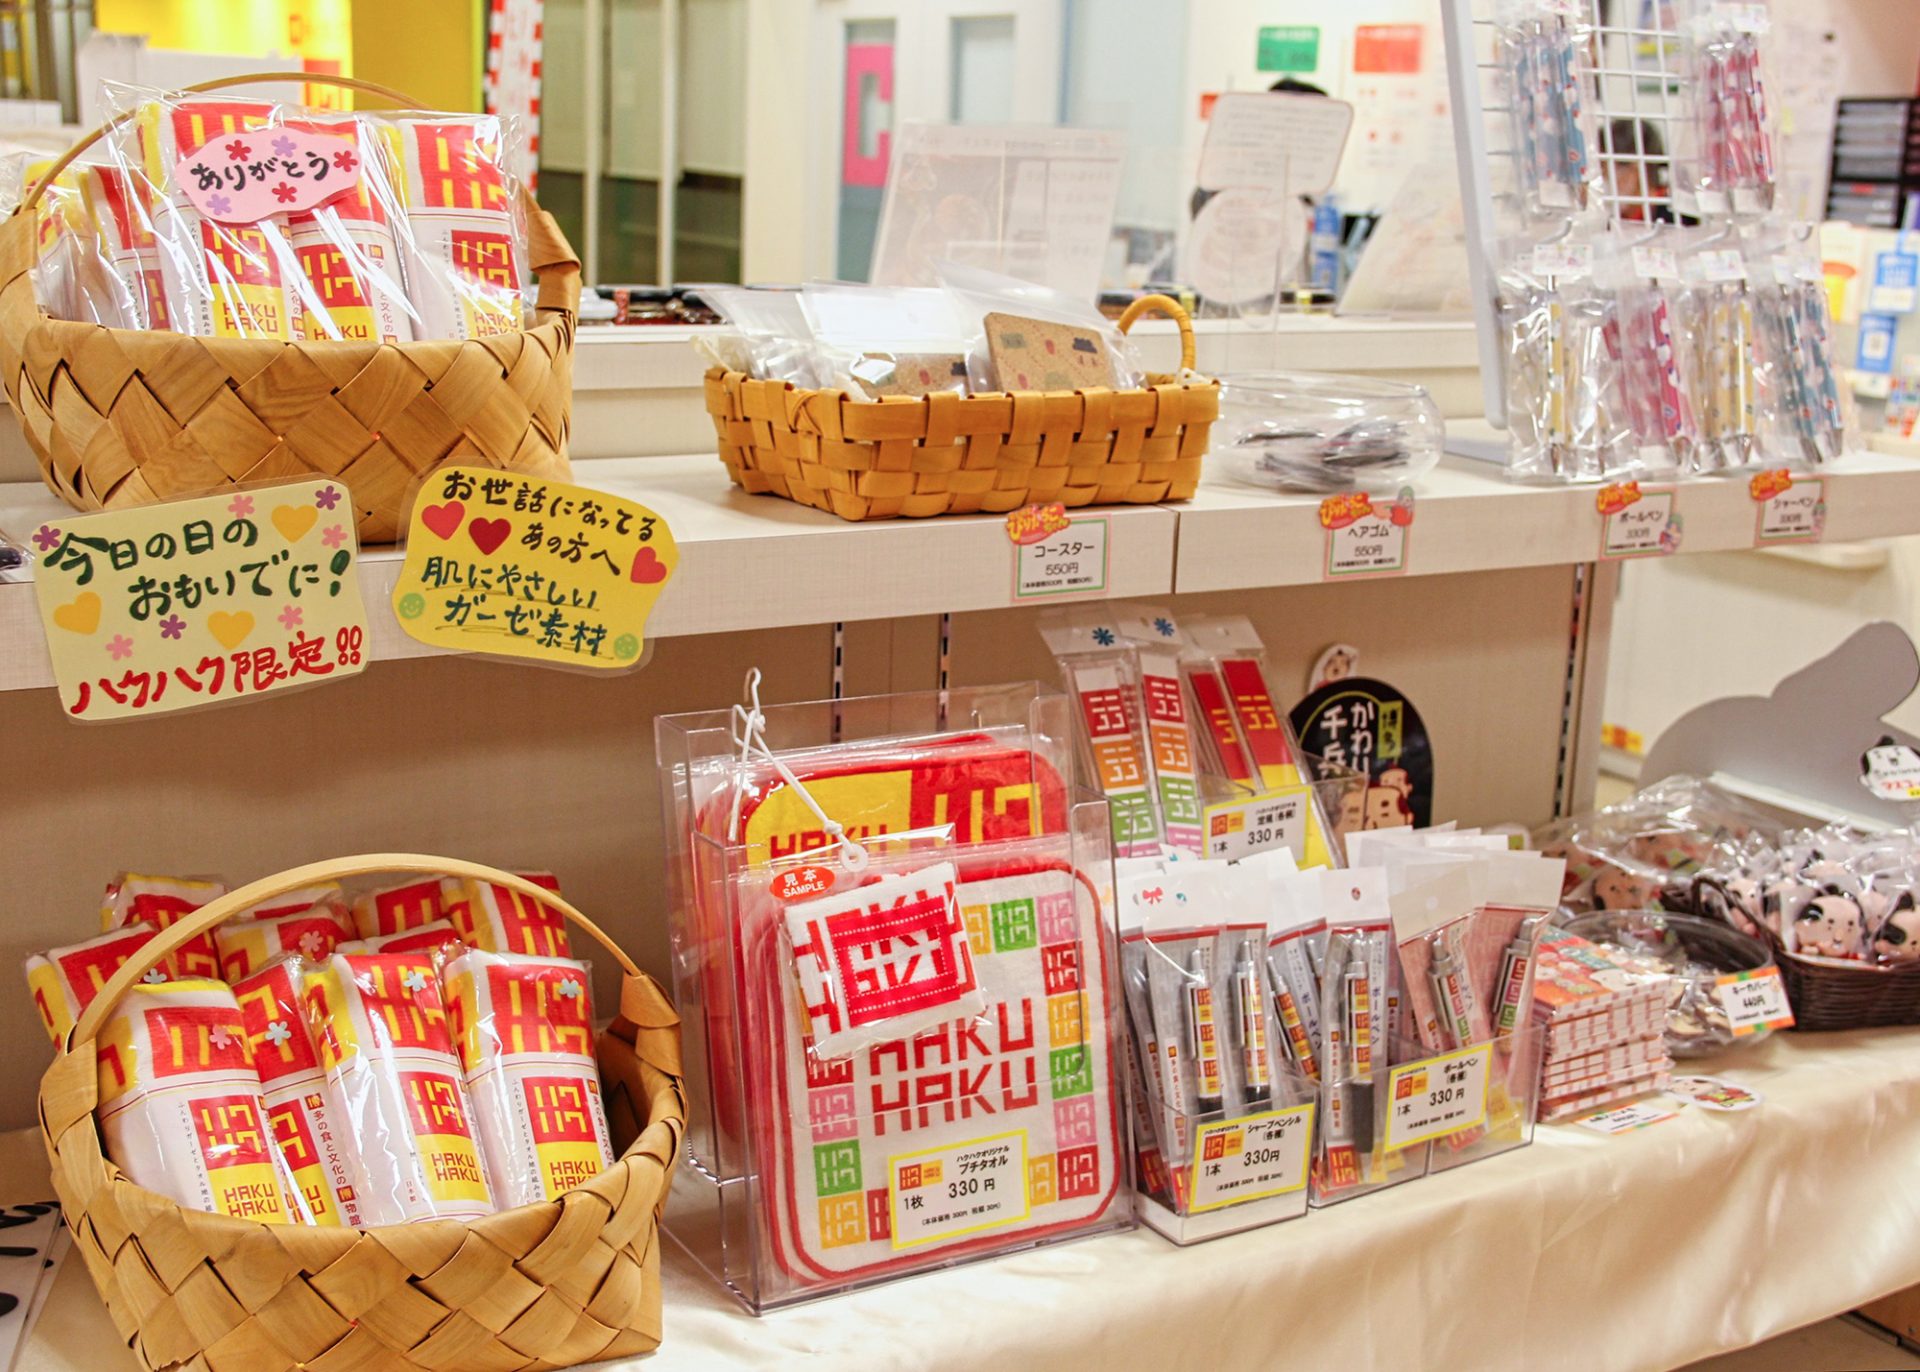 ハクハクオリジナルグッズや博多織や博多人形など、福岡を代表するお土産も販売